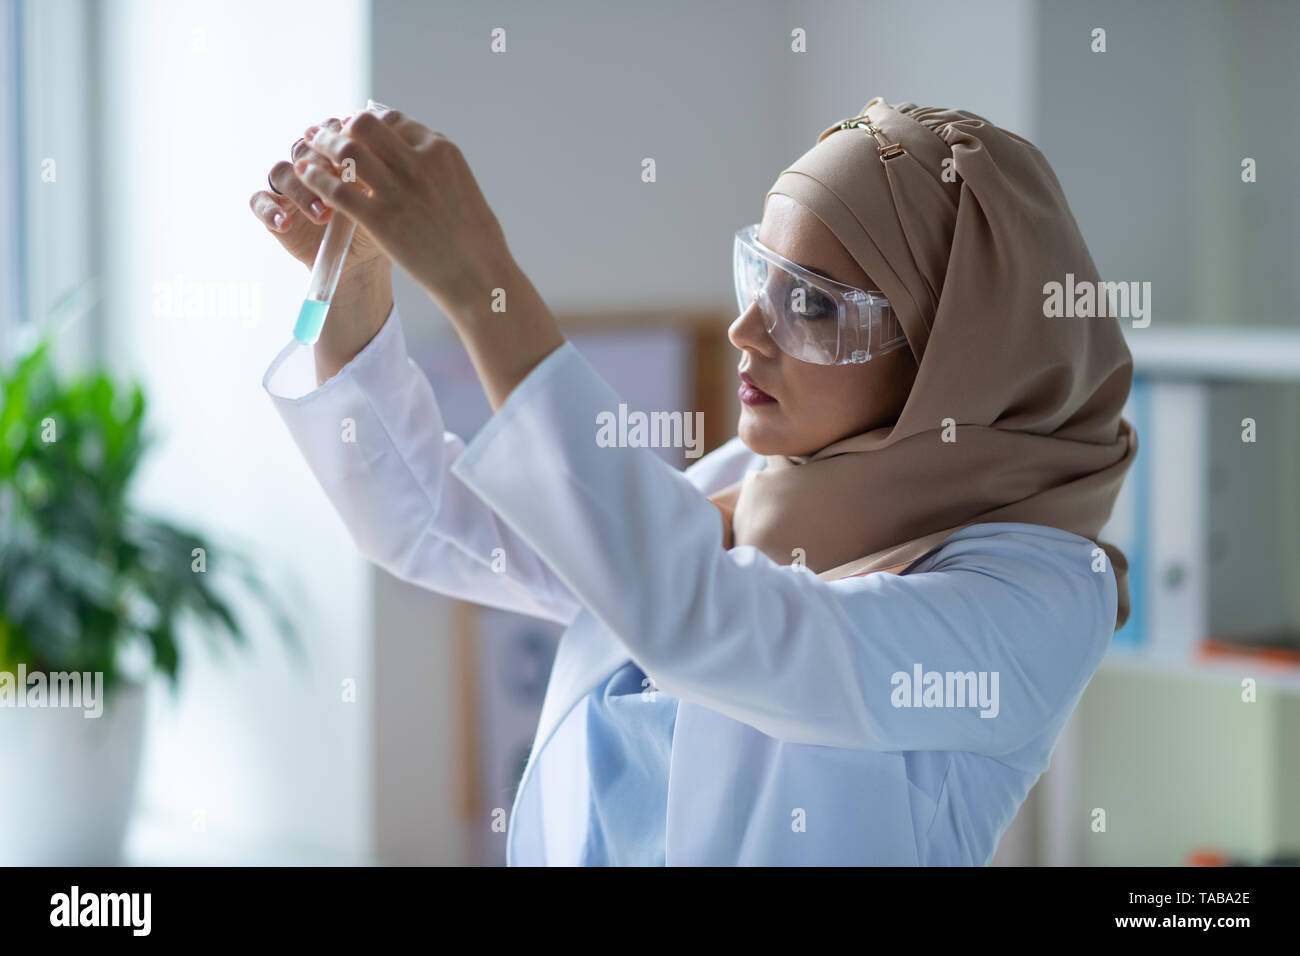 Tube de liquide. Chimiste femelle portant des lunettes à la recherche de tube à essai avec un liquide transparent Banque D'Images